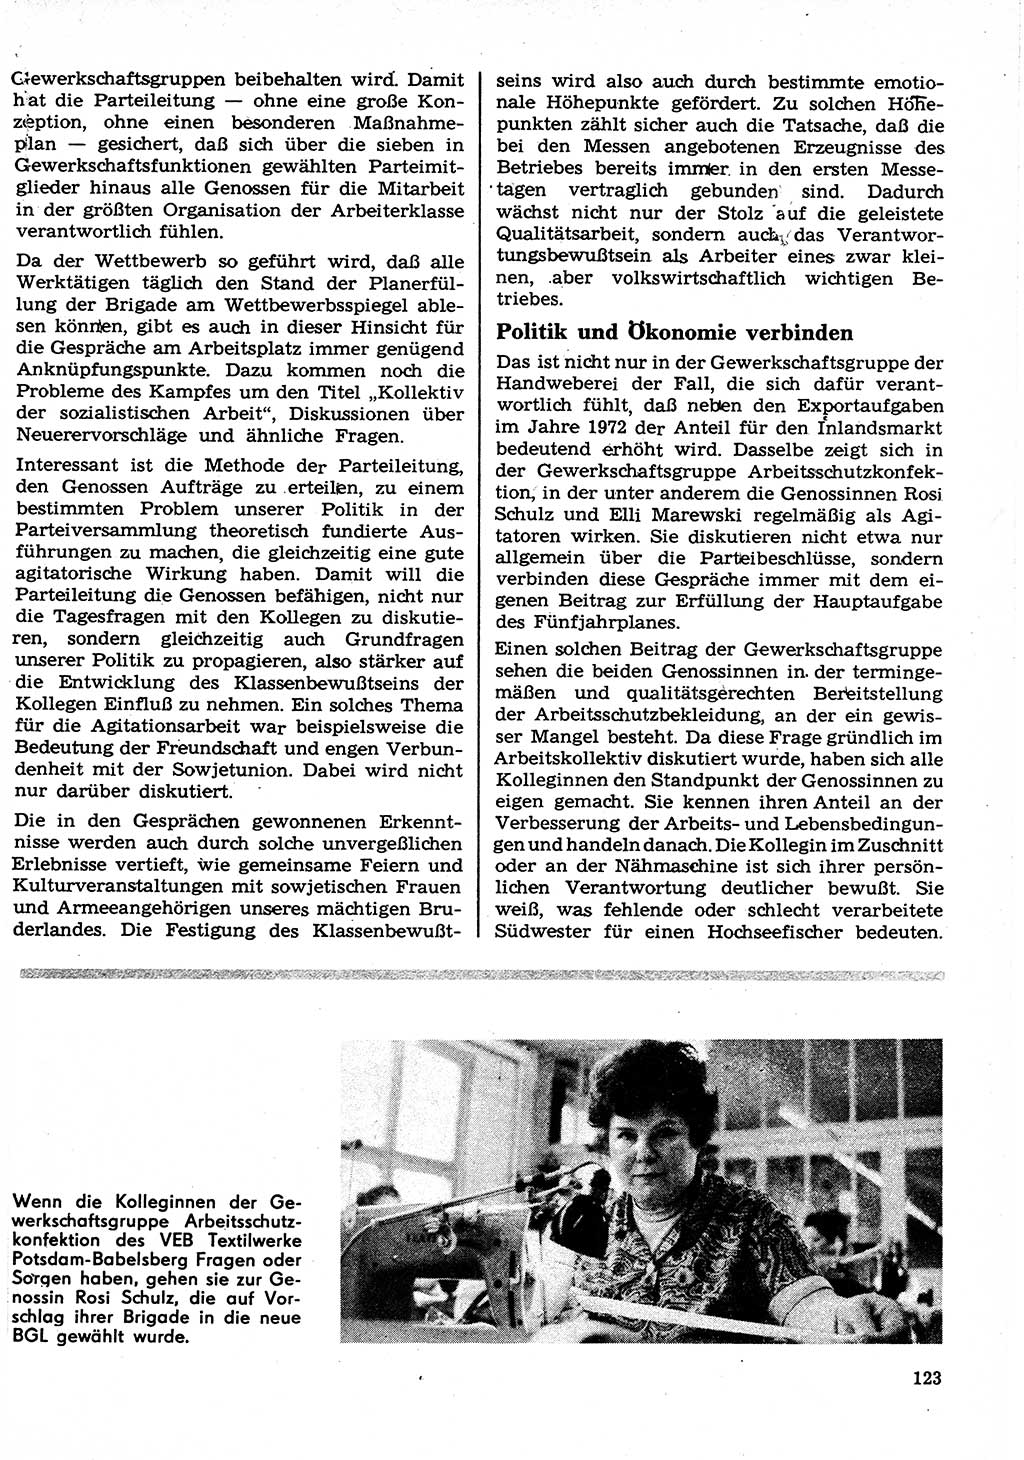 Neuer Weg (NW), Organ des Zentralkomitees (ZK) der SED (Sozialistische Einheitspartei Deutschlands) für Fragen des Parteilebens, 27. Jahrgang [Deutsche Demokratische Republik (DDR)] 1972, Seite 123 (NW ZK SED DDR 1972, S. 123)